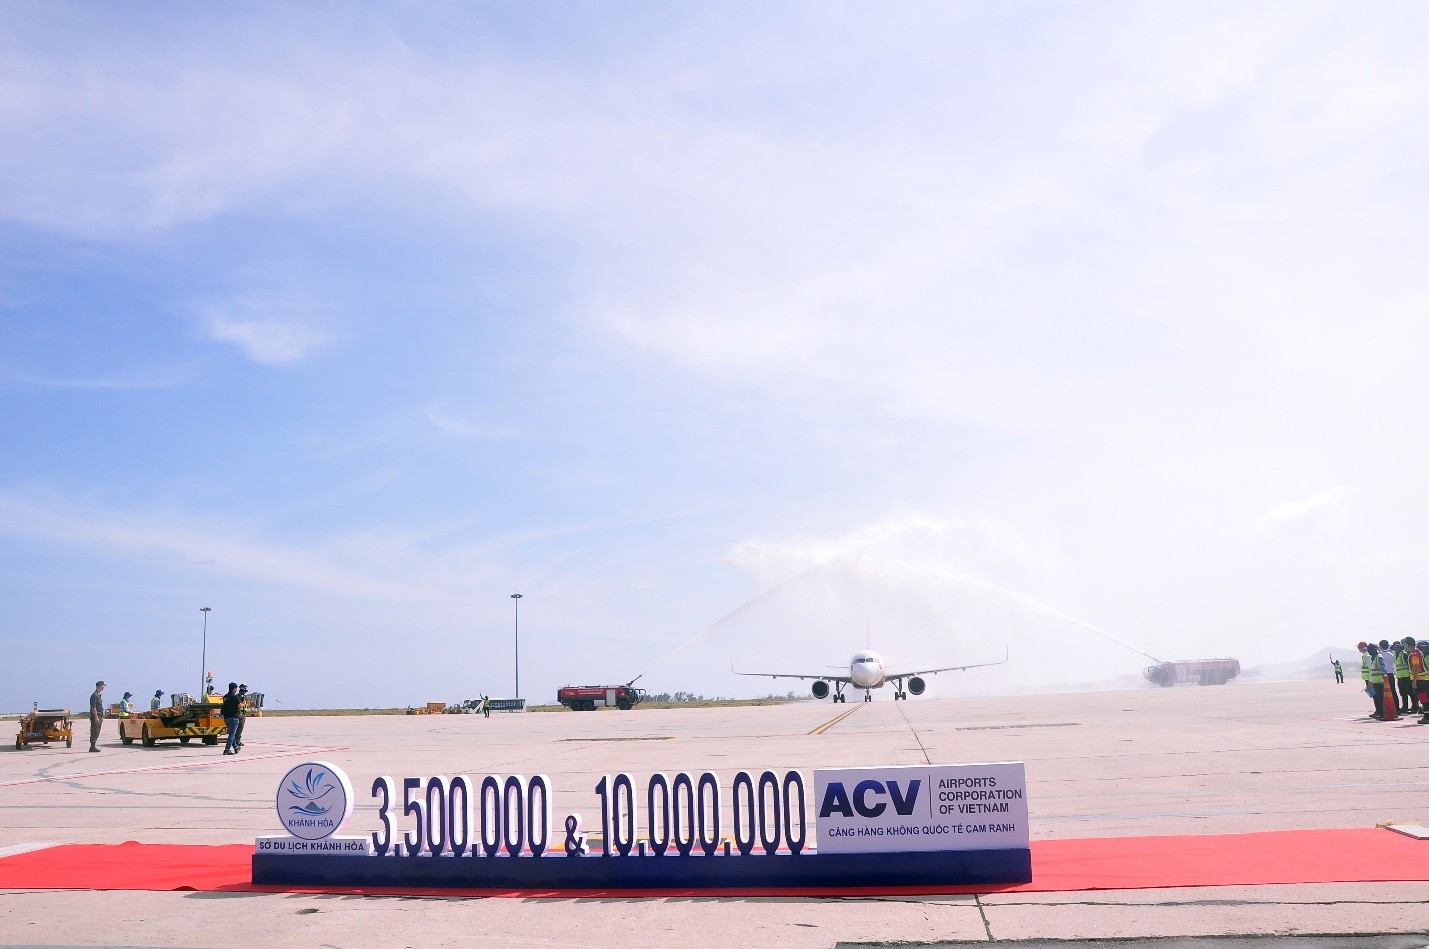 Chuyên cơ hãng hàng không VIETJET AIR hạ cánh tại Cảng Hàng Không Quốc Tế Cam Ranh, trên chuyến bay có vị khách du lịch Quốc tế thứ 3.500.000 và vị khách thứ 10.000.000 